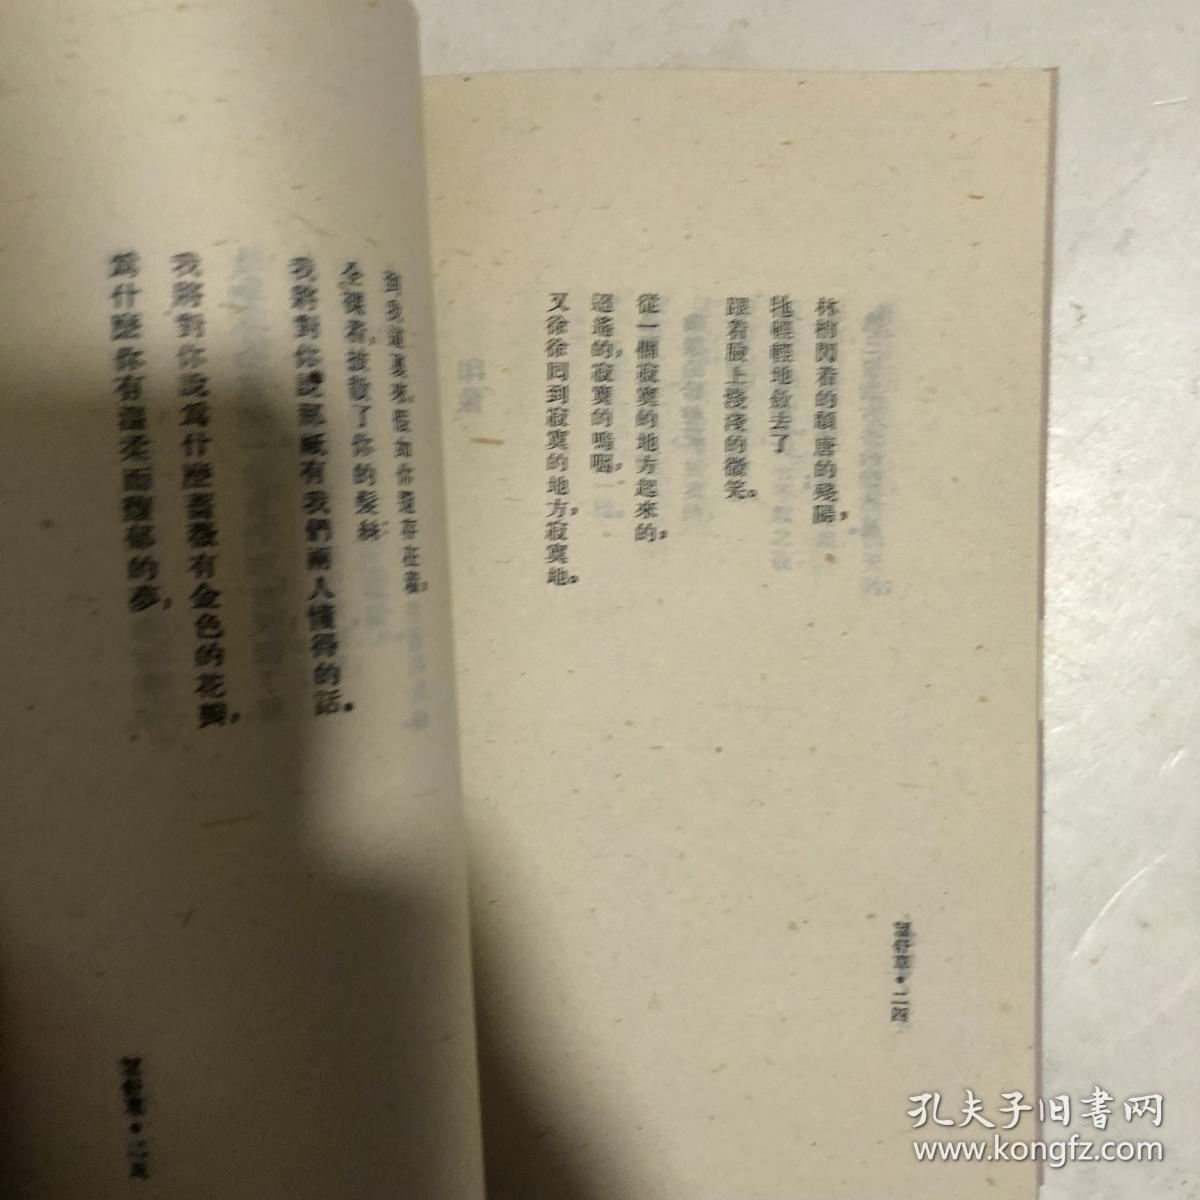 望舒草，上海书店根据民国版本影印